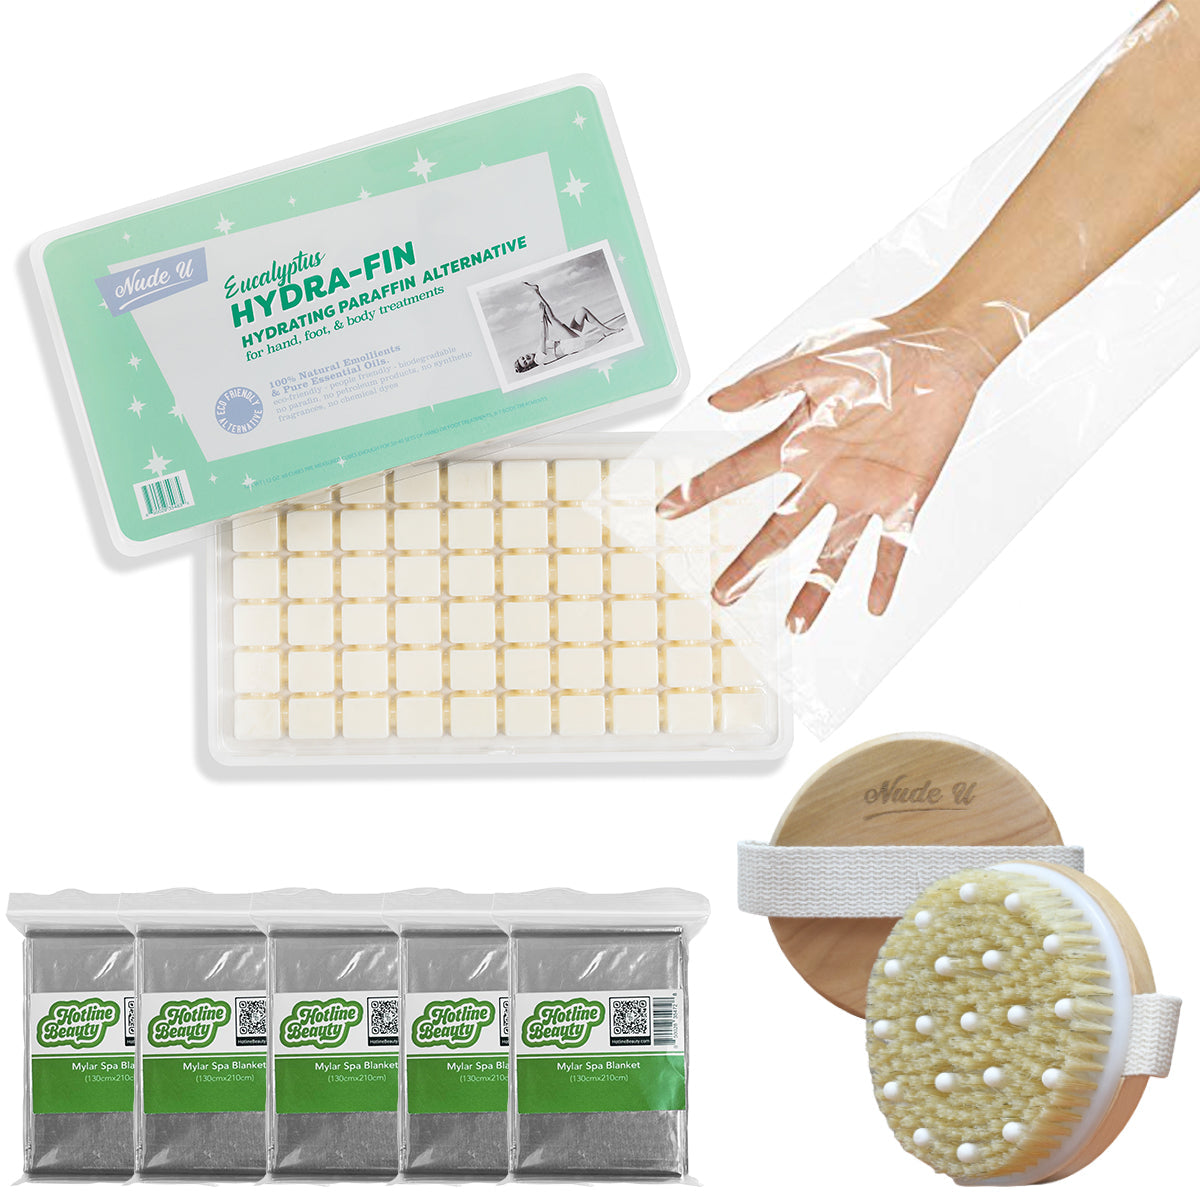 Advance Body Wrap Kit | Hydrating Paraffin Alternative | NUDE U Spas NUDE U Eucalyptus Hydra-Fin 